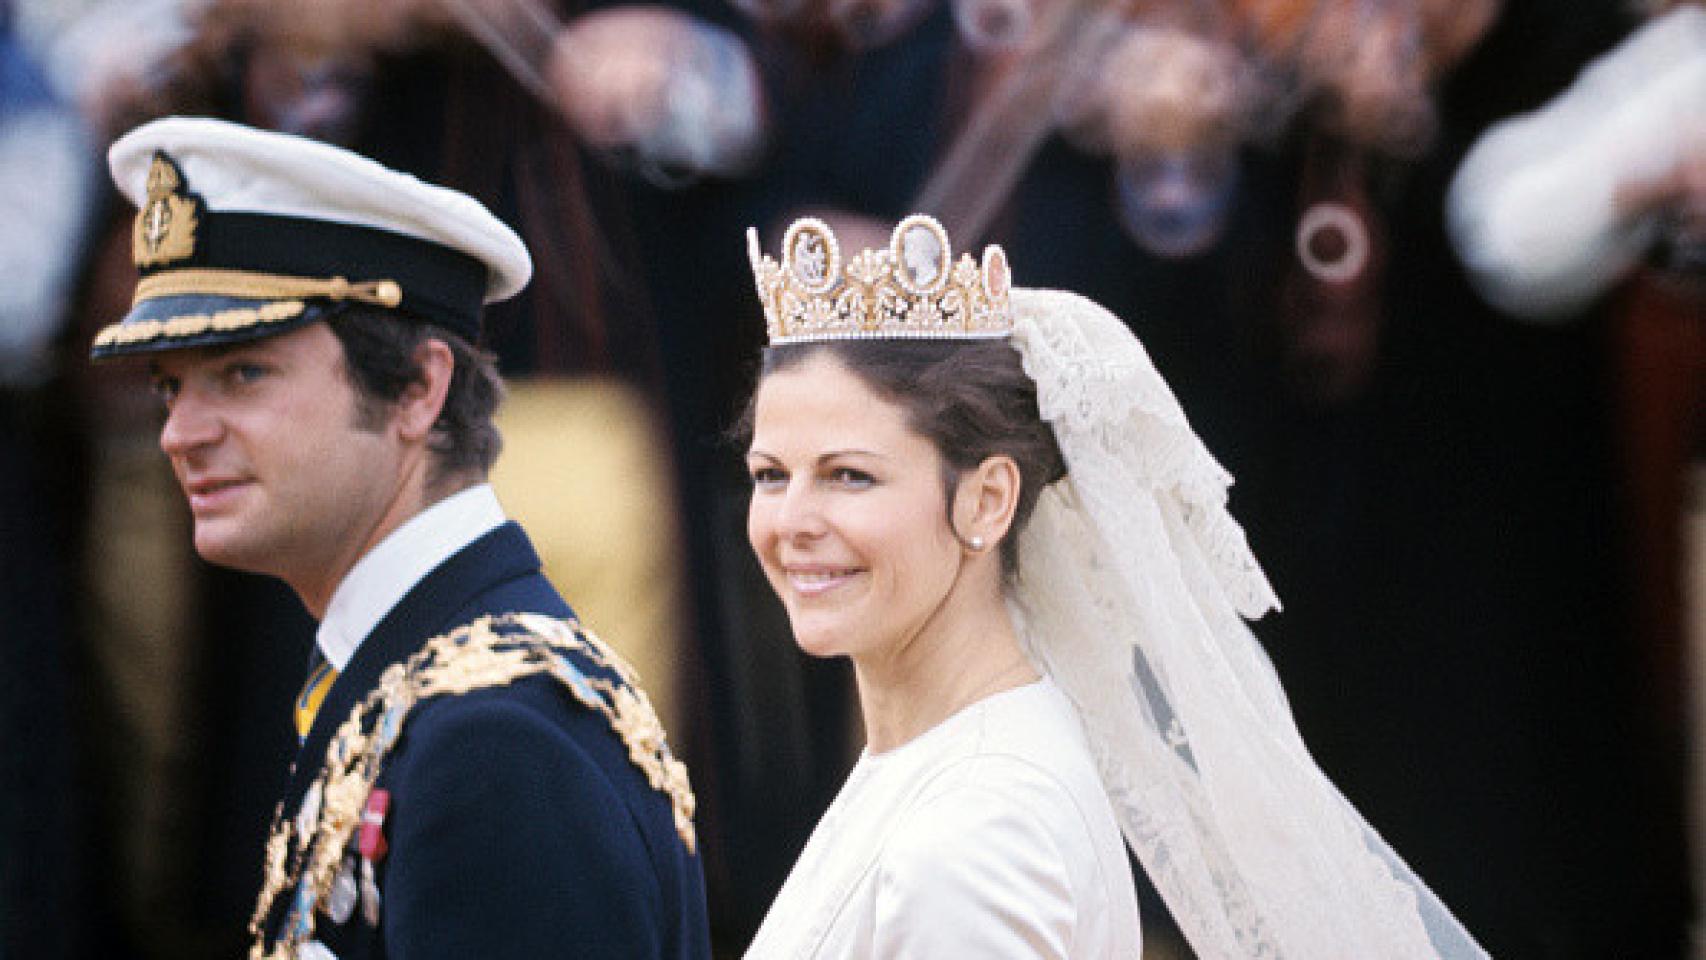 La boda de los Reyes de Suecia, en 1976.